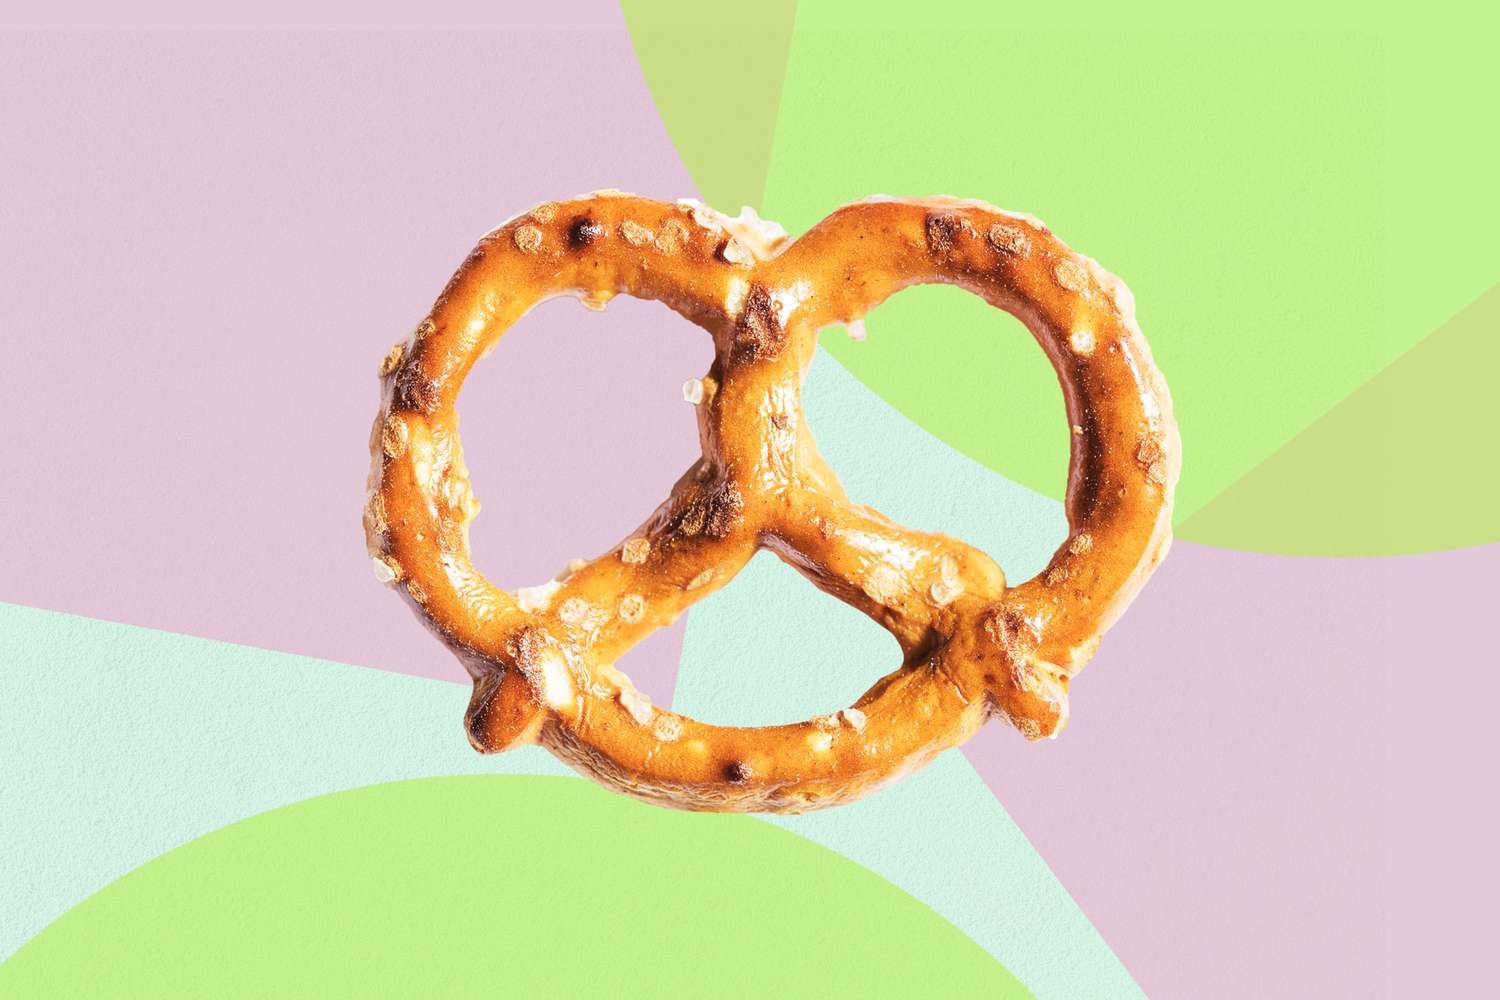 Salted vs. unsalted pretzels